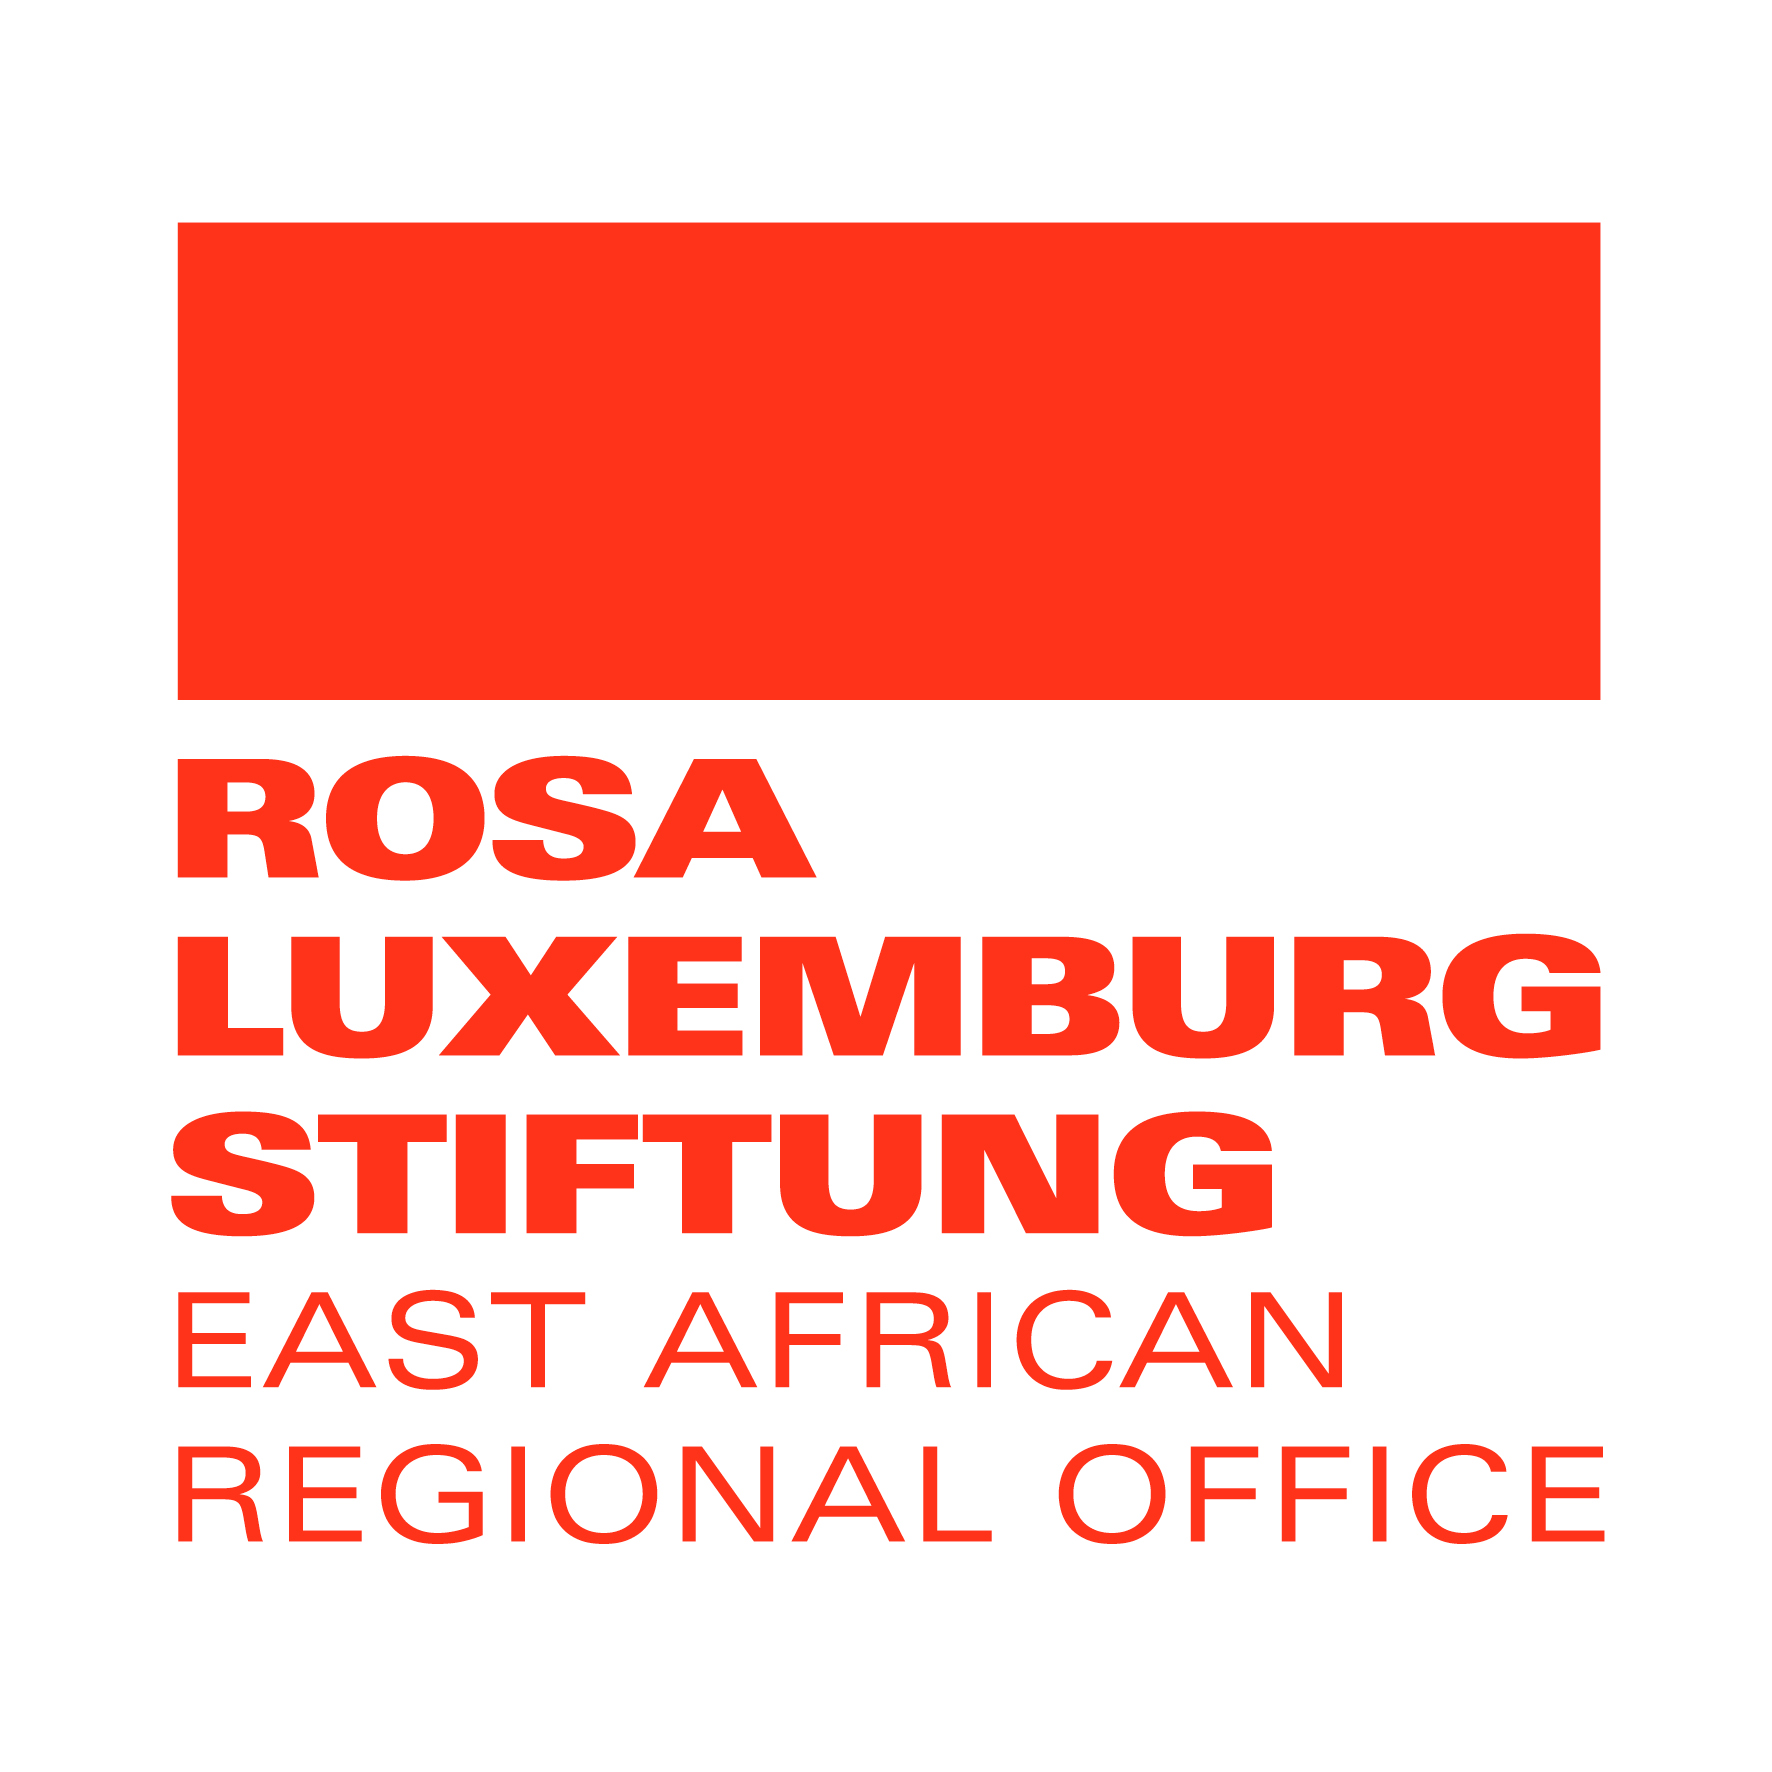 Rosa Luxemburg Foundation